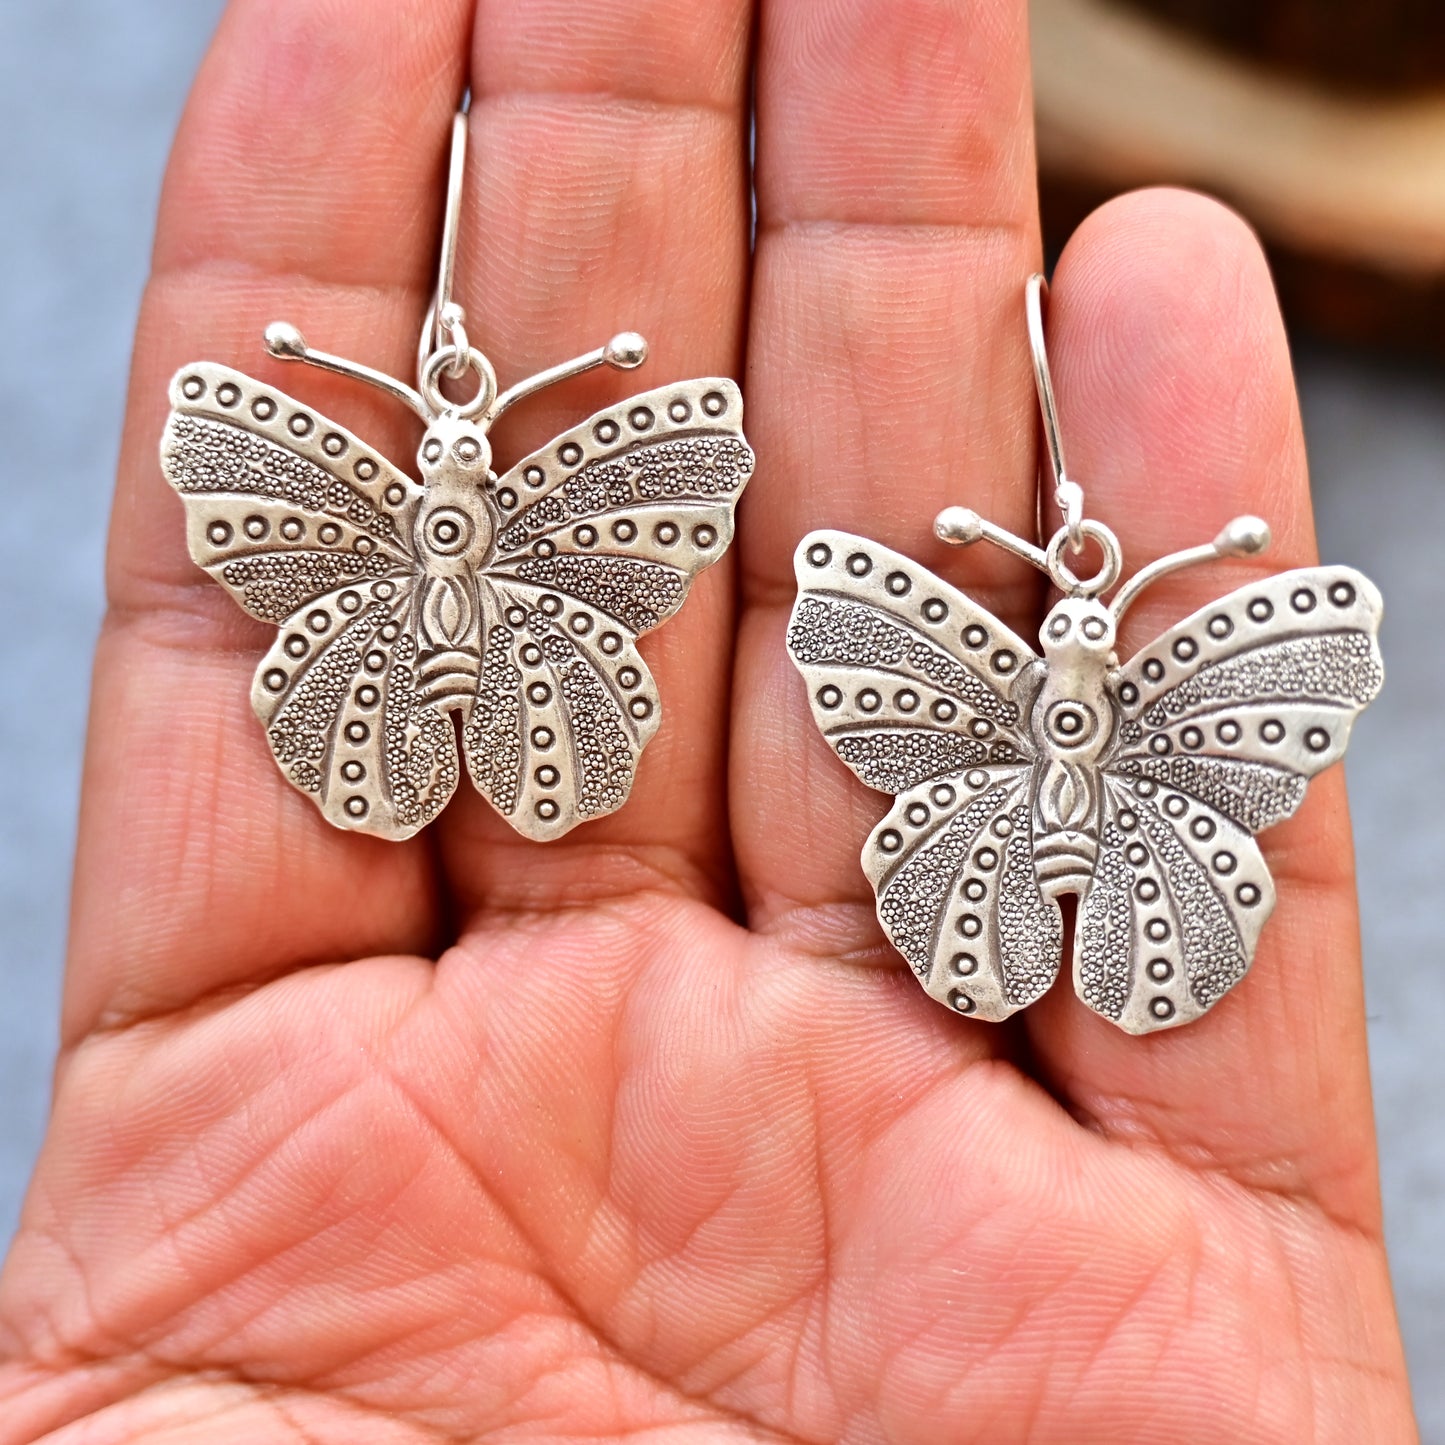 1.	Butterfly earrings